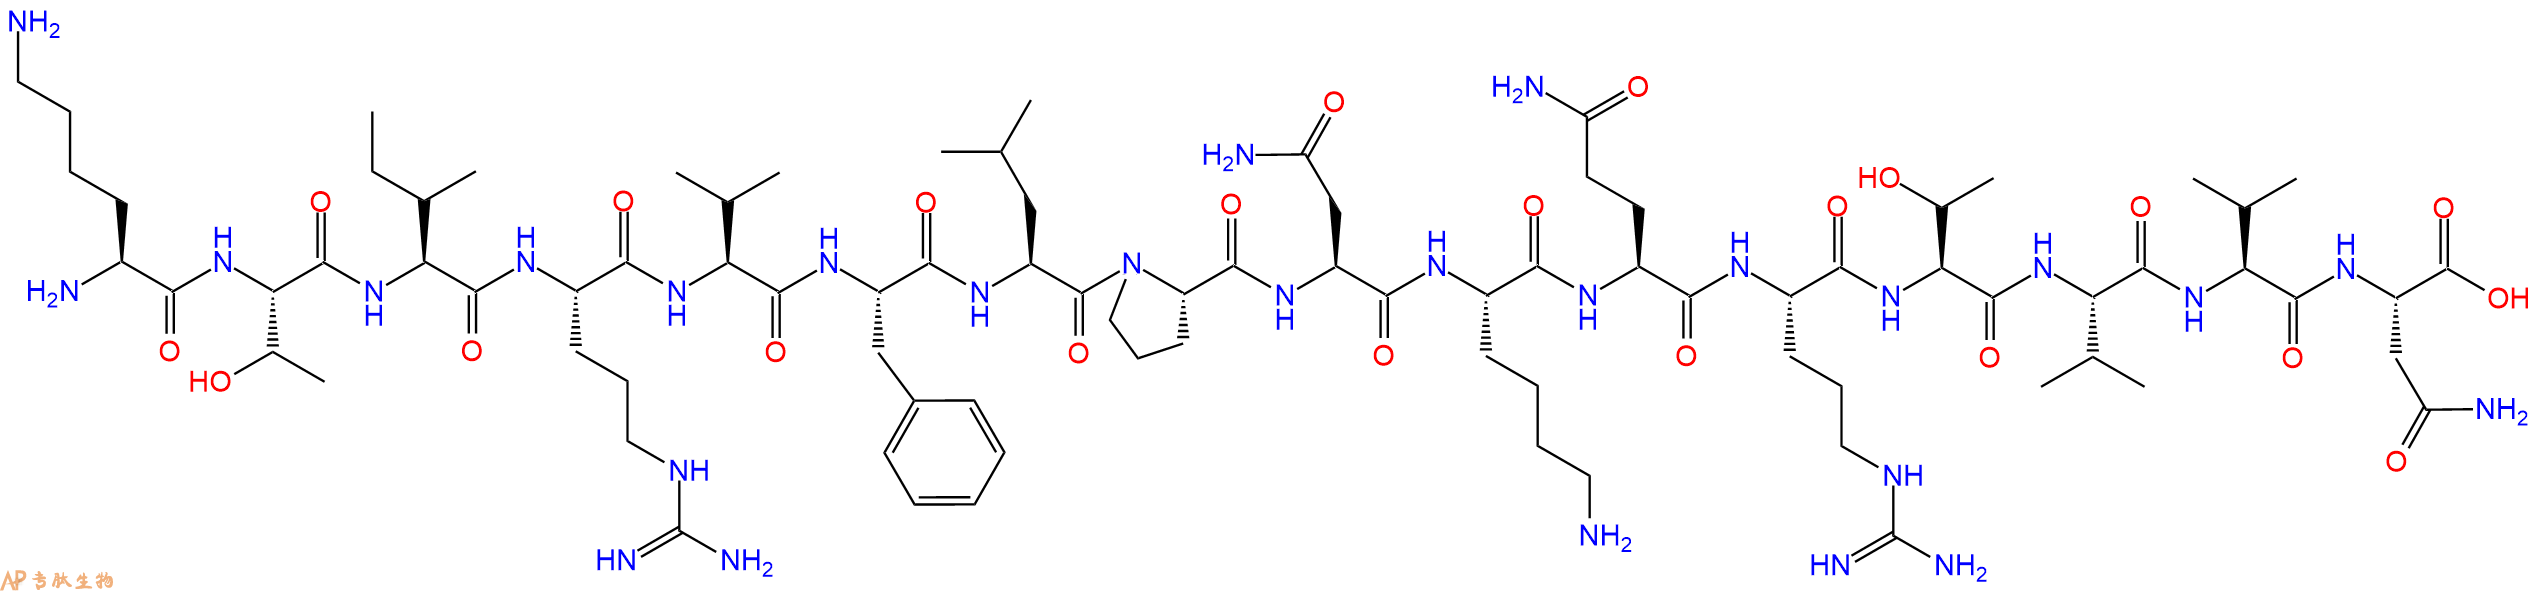 专肽生物产品H2N-Lys-Thr-Ile-Arg-Val-Phe-Leu-Pro-Asn-Lys-Gln-Ar